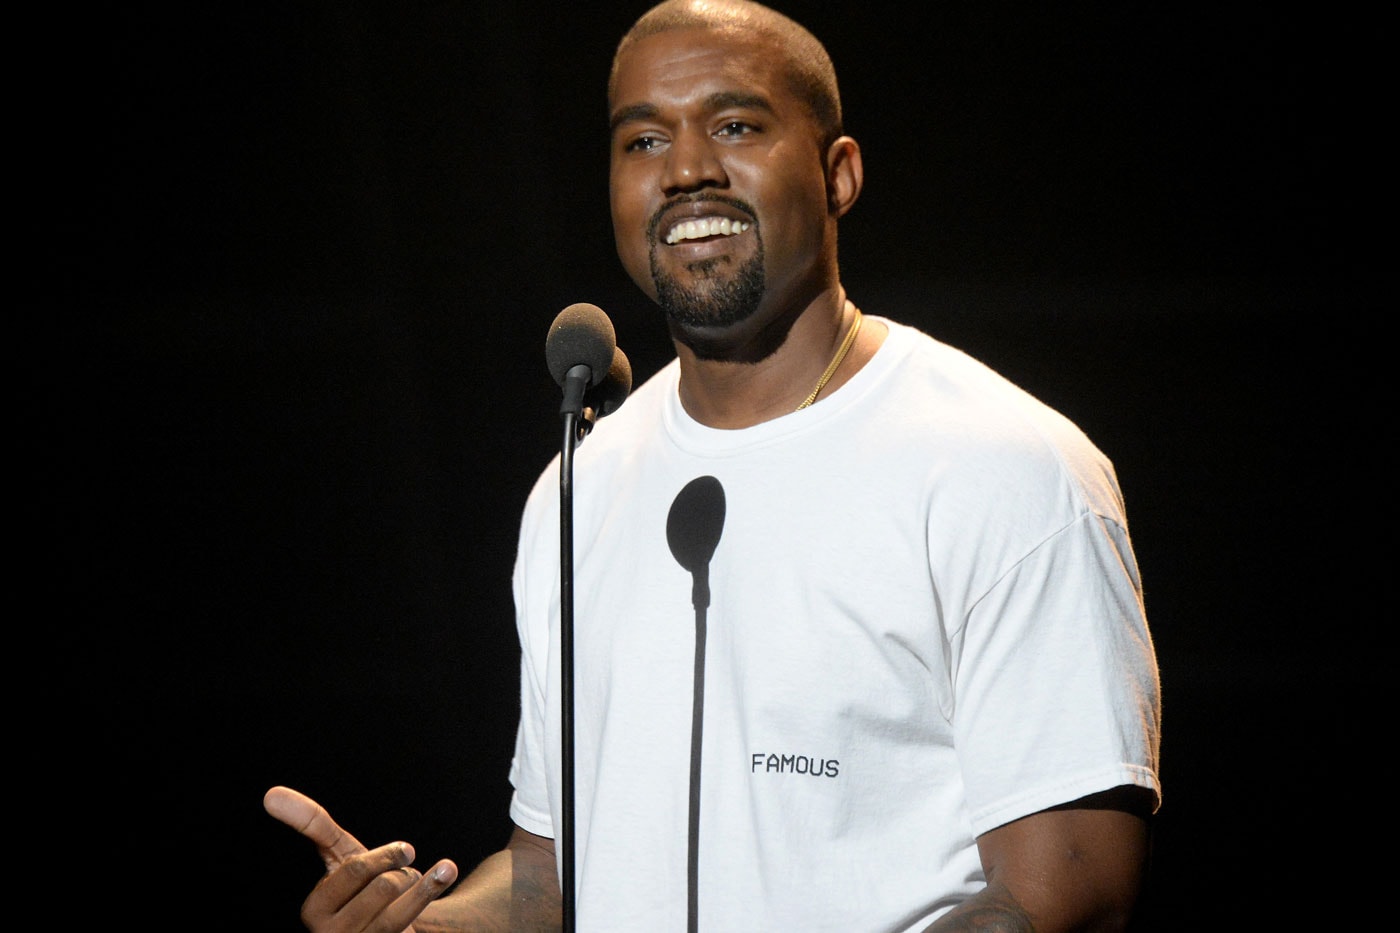 Kanye West 5150 Involuntary Psychiatric Hold Hospitalization